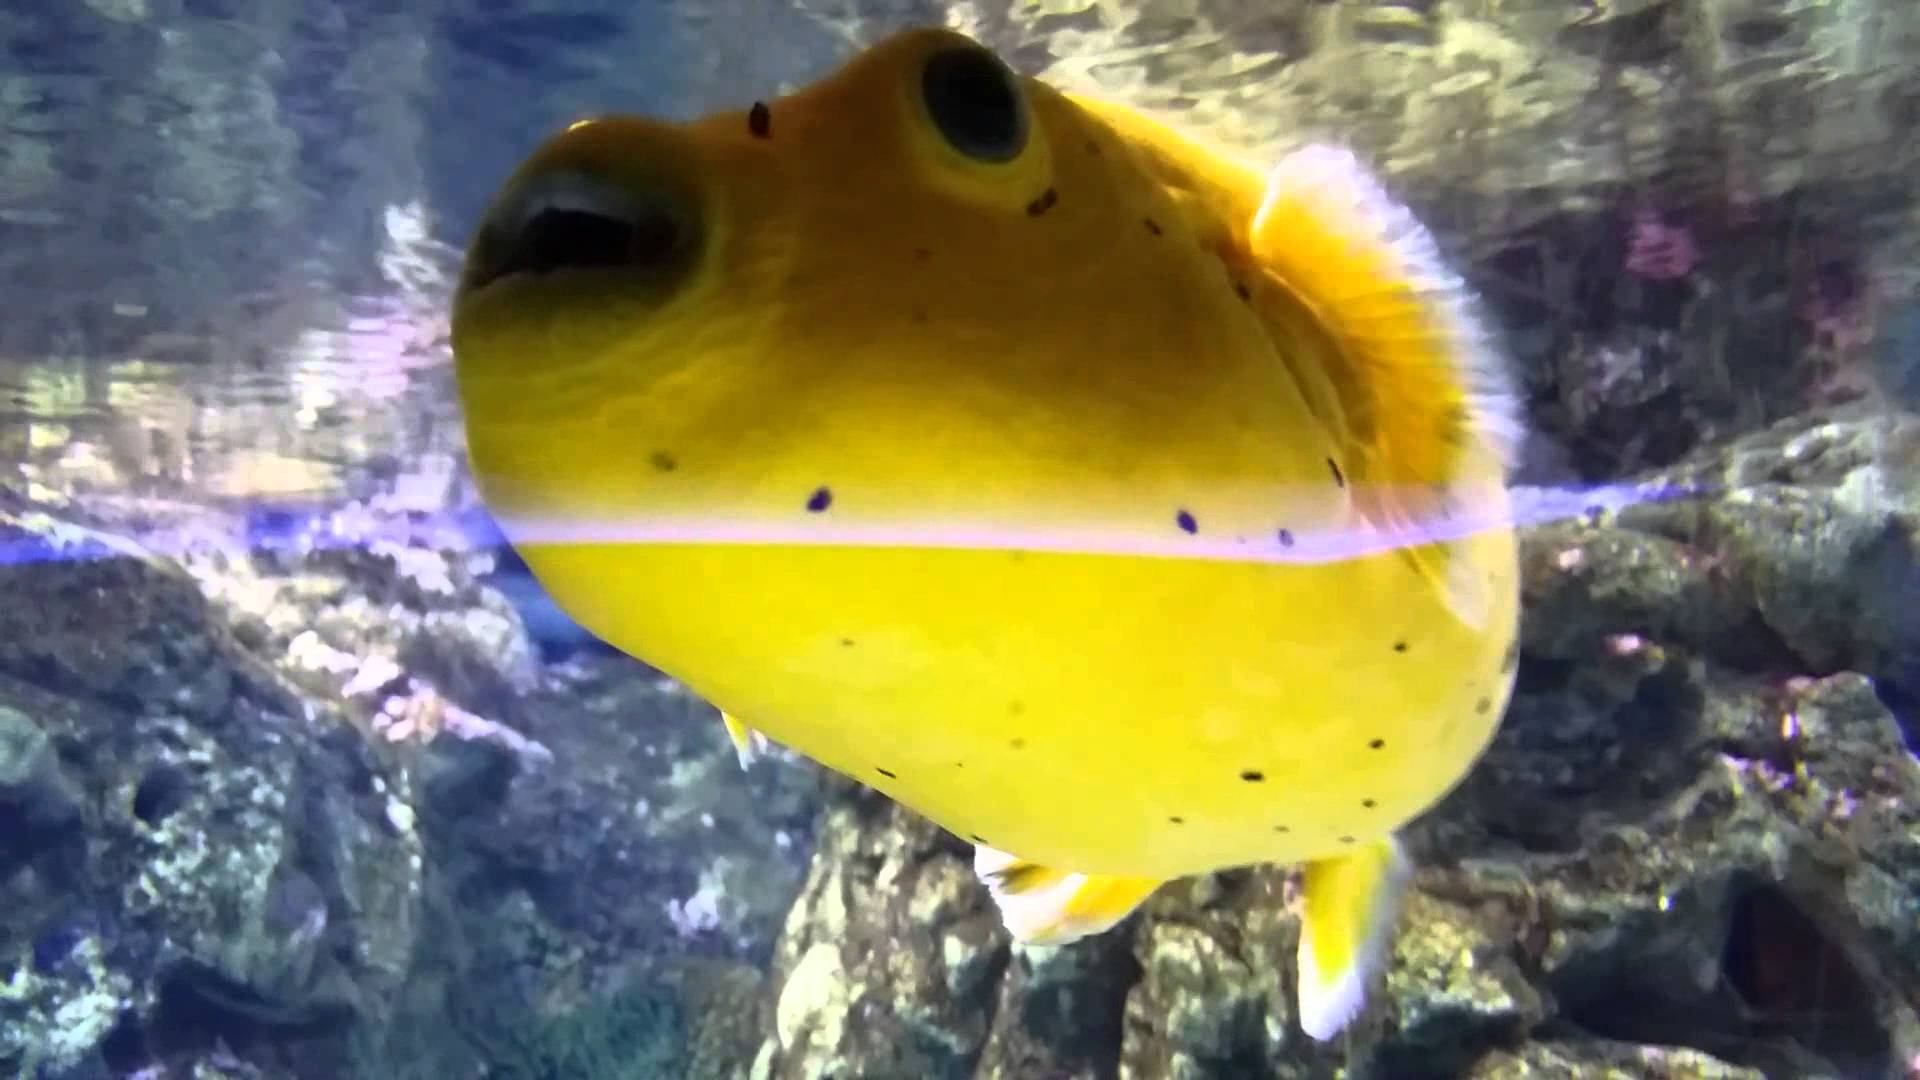 Spongefish photo